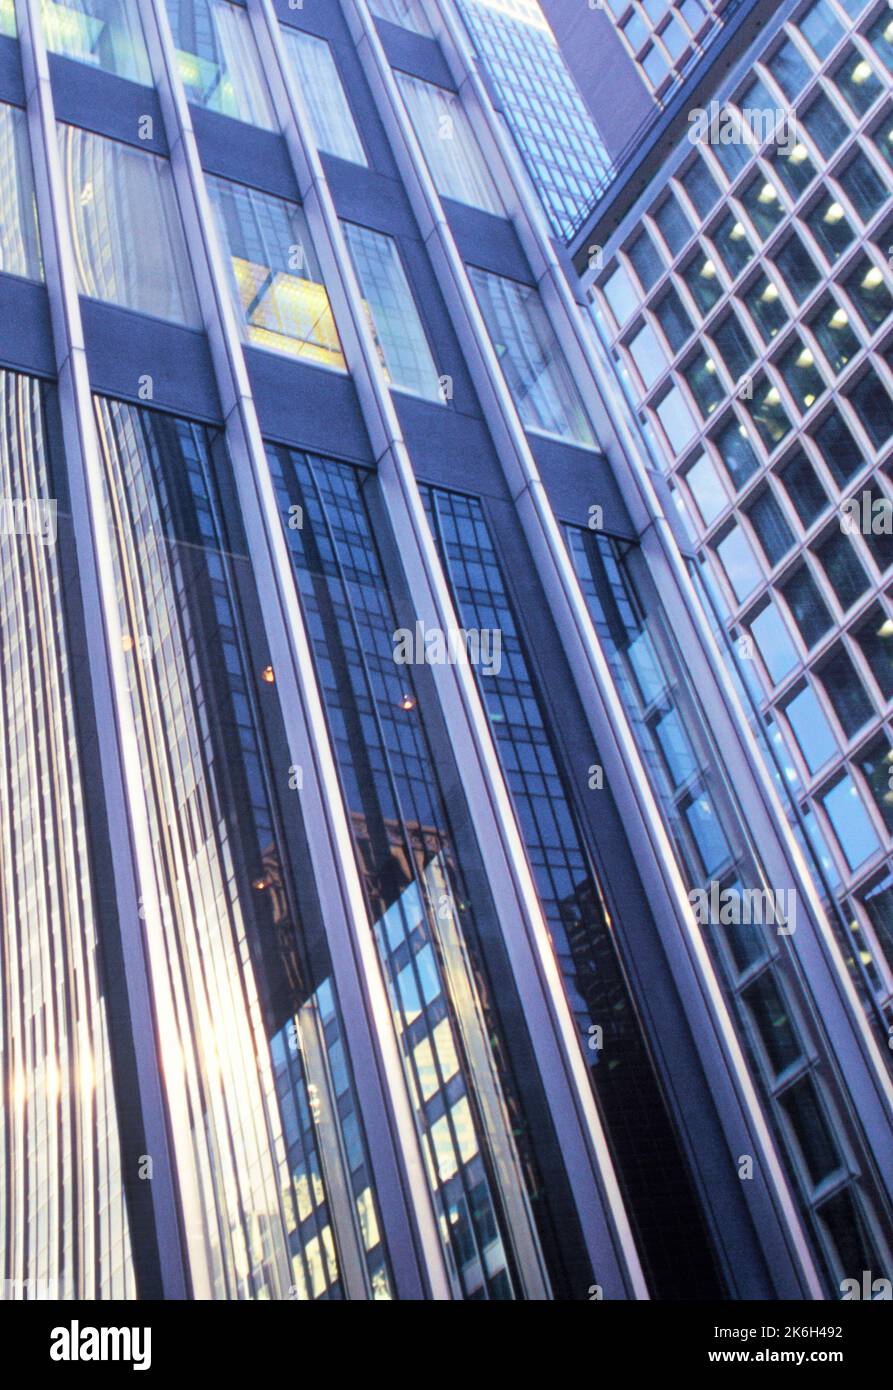 Immeuble de bureaux gratte-ciel dans le quartier financier de Lower Manhattan, New York. Détail architectural de la façade du bâtiment de bureau. ÉTATS-UNIS Banque D'Images